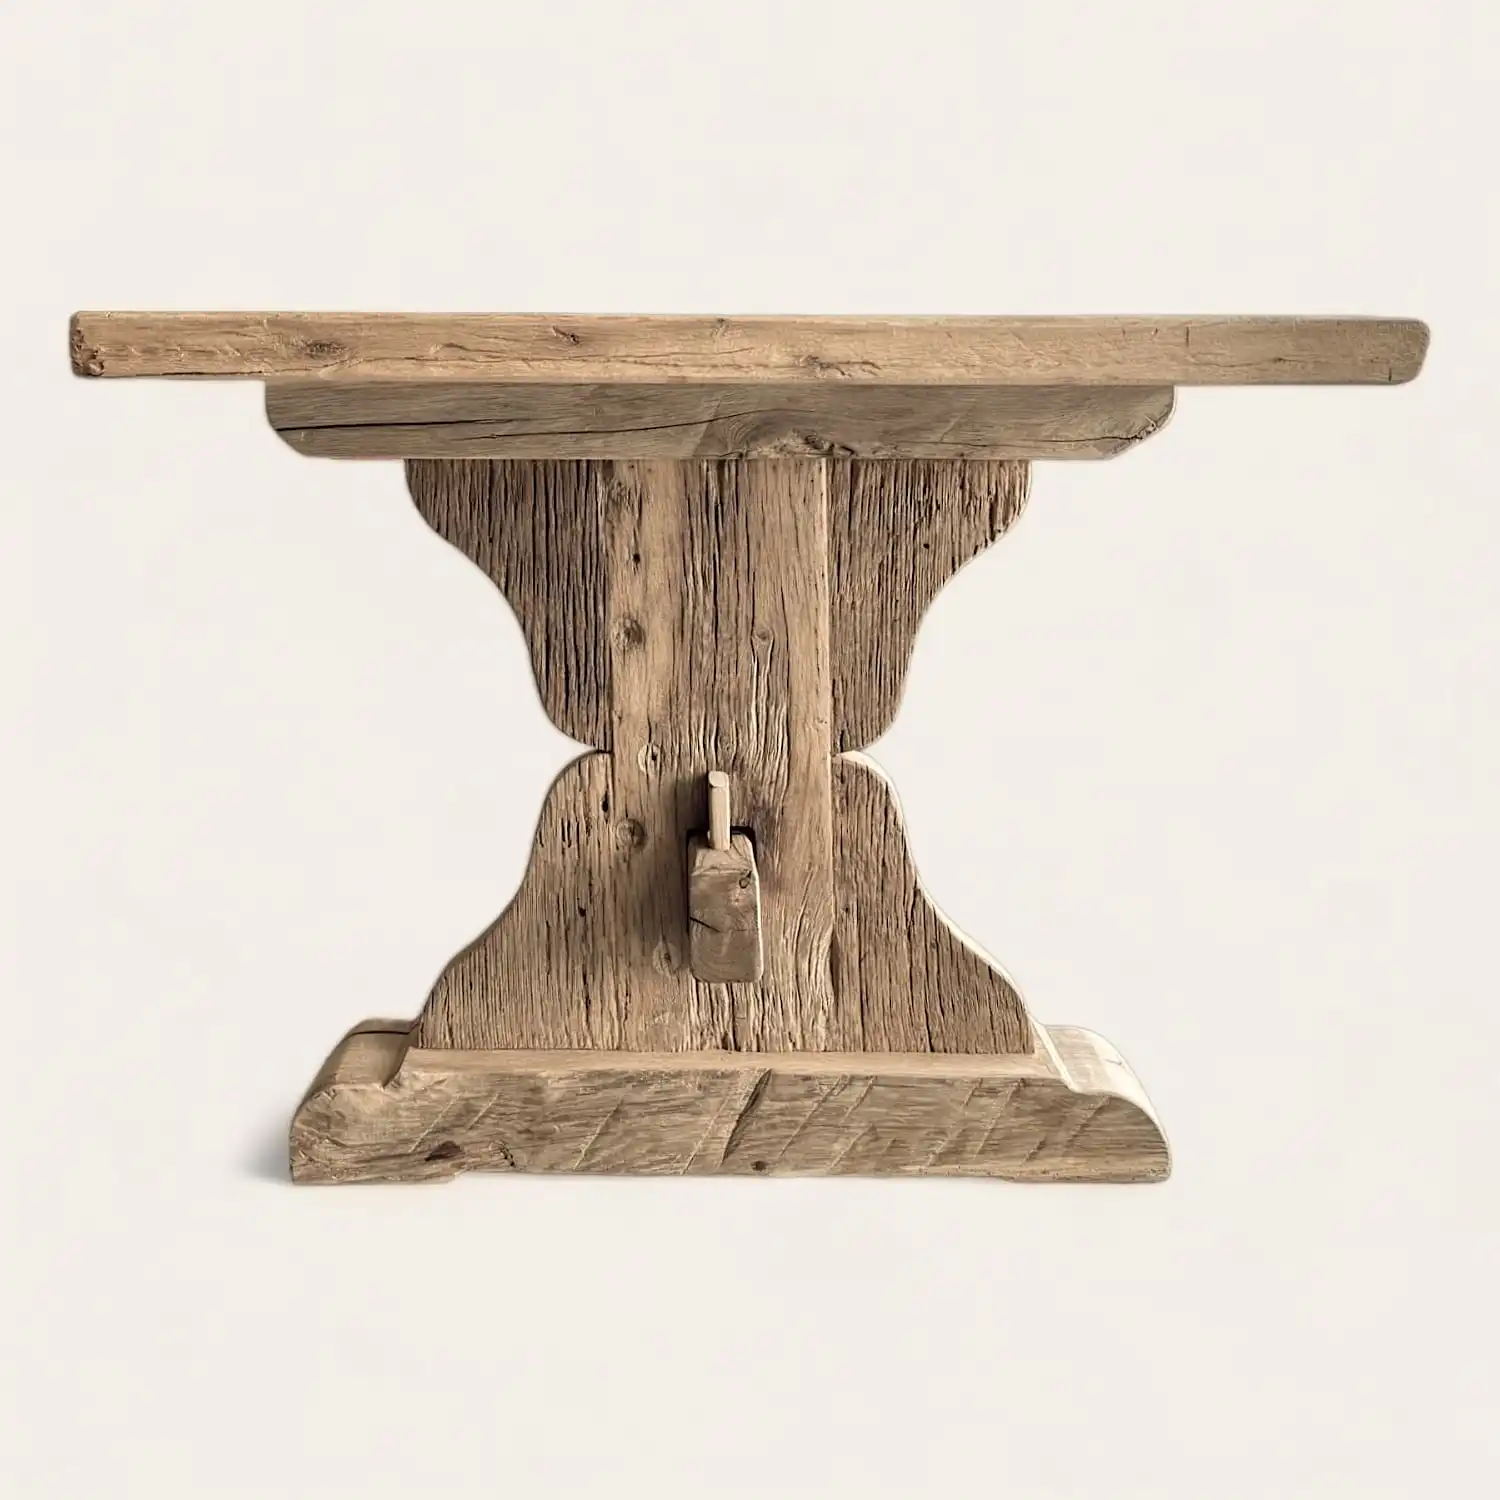  Une console rustique en bois avec un plateau en bois. 